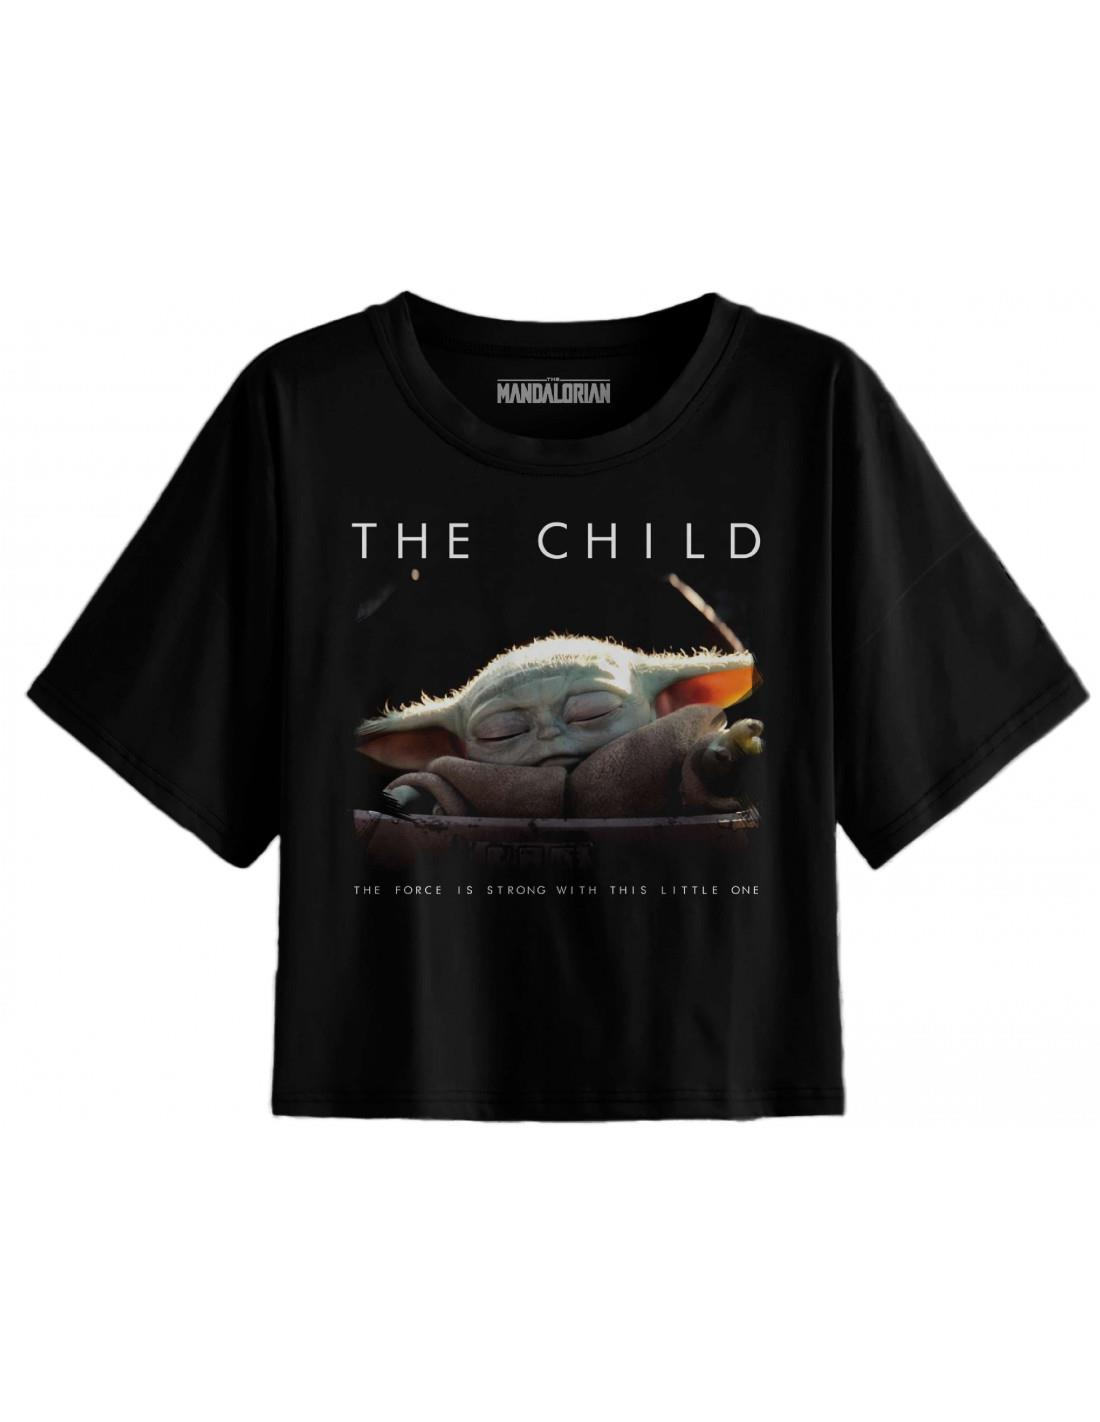 The Mandalorian - T-shirt Noir Femmes The Child - L